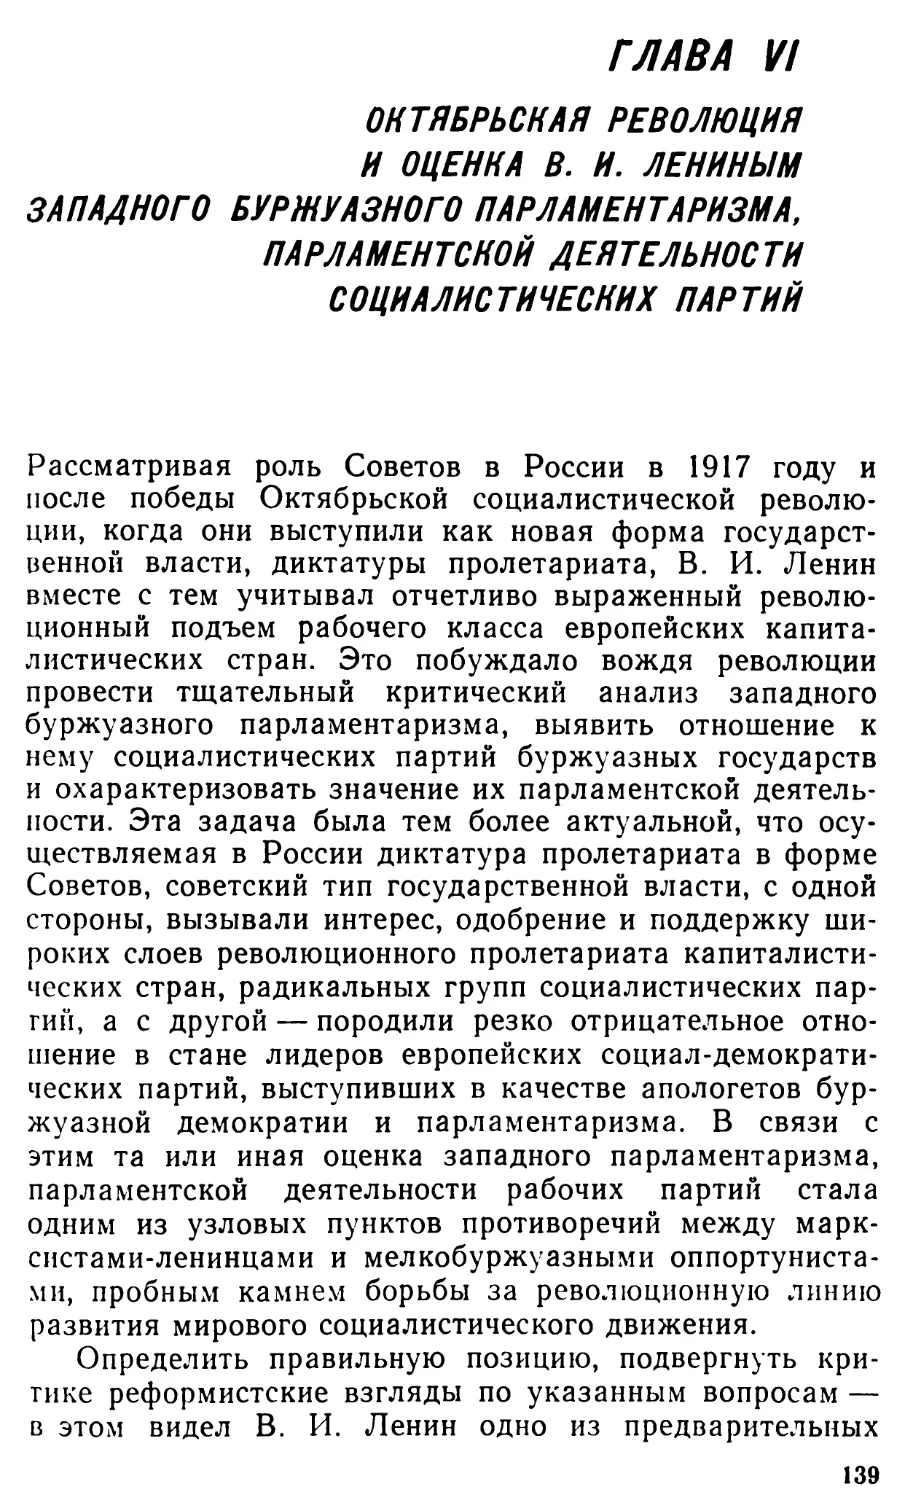 Глава VI. Октябрьская революция и оценка В.И. Лениным западного буржуазного парламентаризма, парламентской деятельности социалистических партий